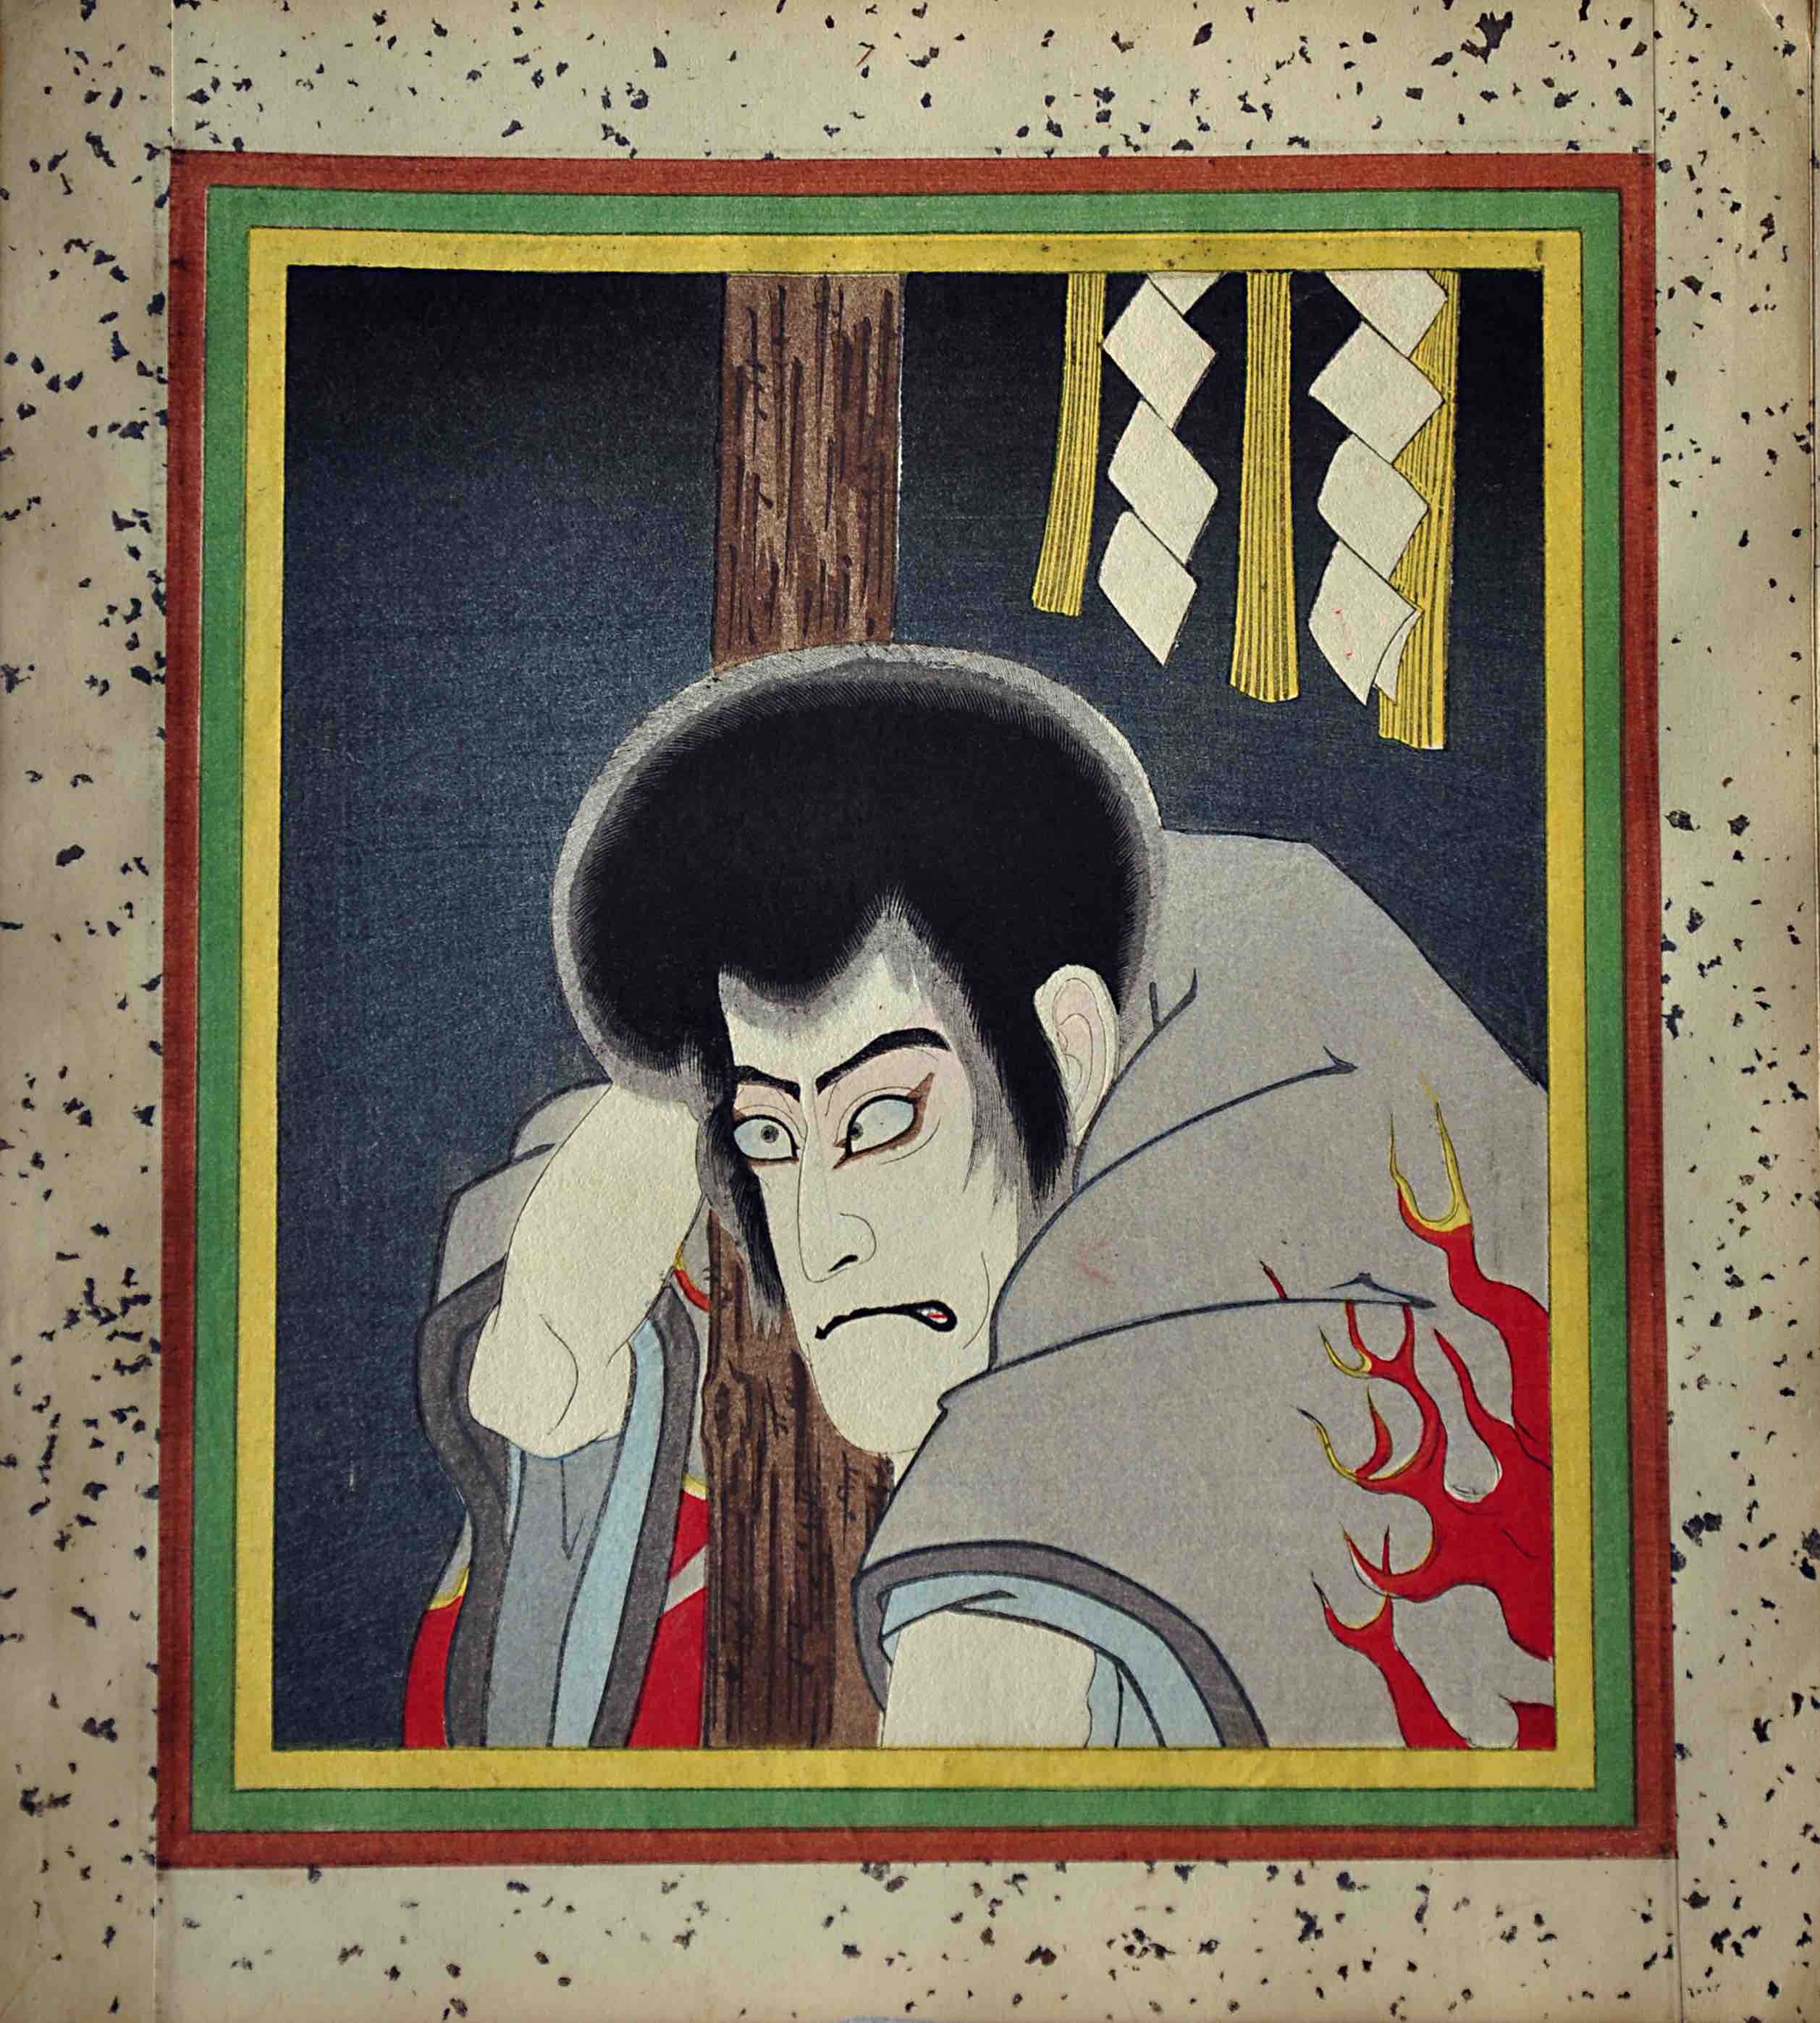 [CHIKAWA DANJURO VII - KABUKI]. - The Kabuki Juhachiban, or Eighteen Best Kabuki Plays. Tokyo (?) 1917.